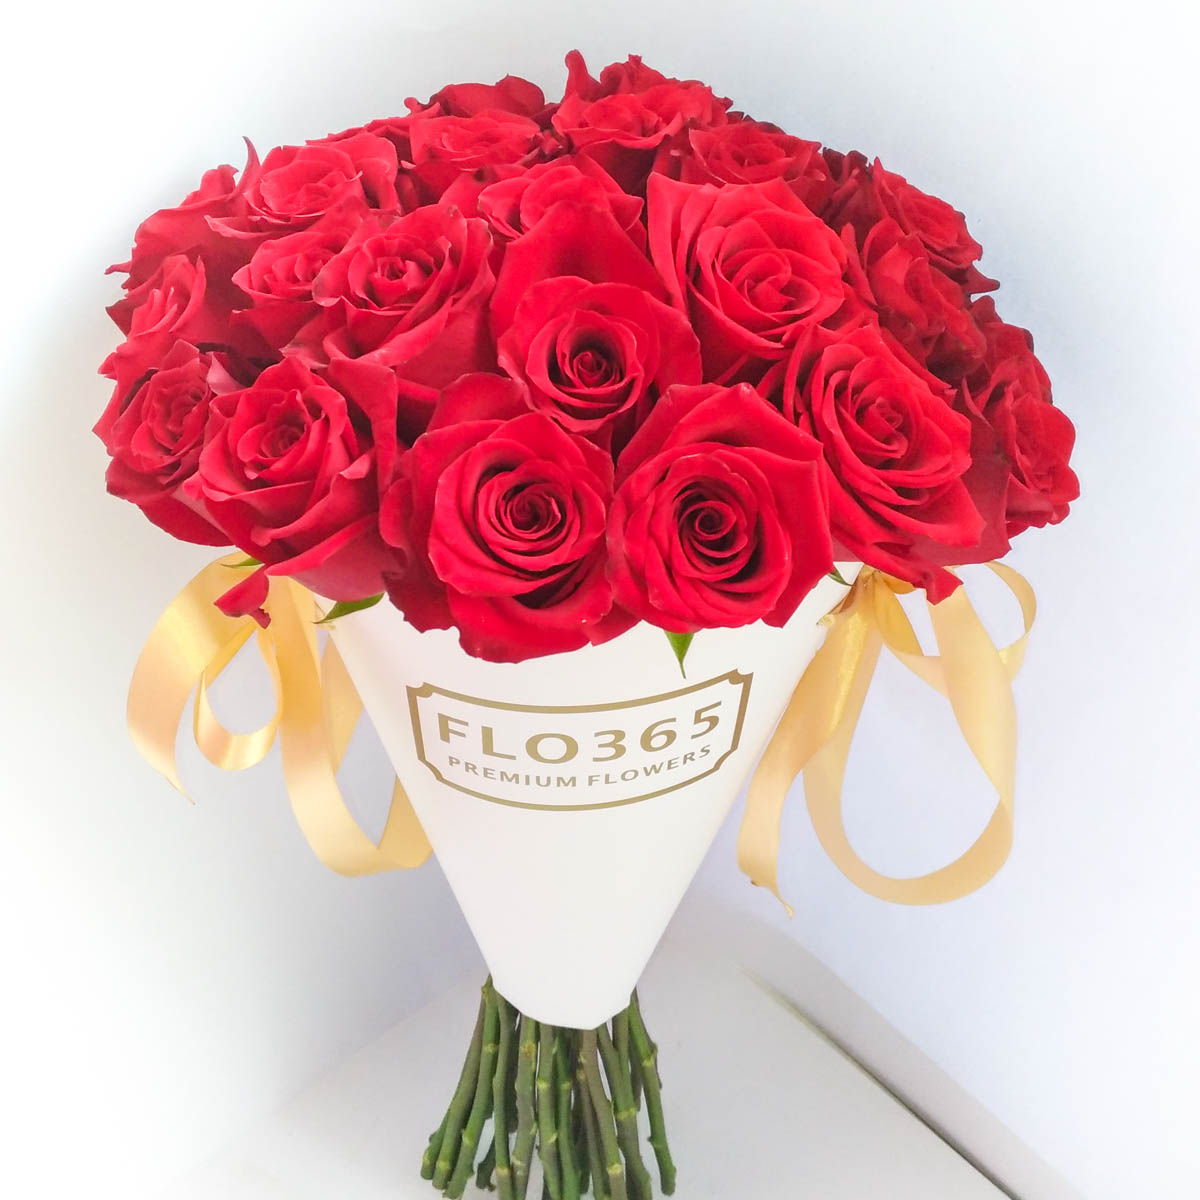 ХИТ ПРОДАЖ! 25 Красных роз в конверте - Фотография цветов перед доставкой